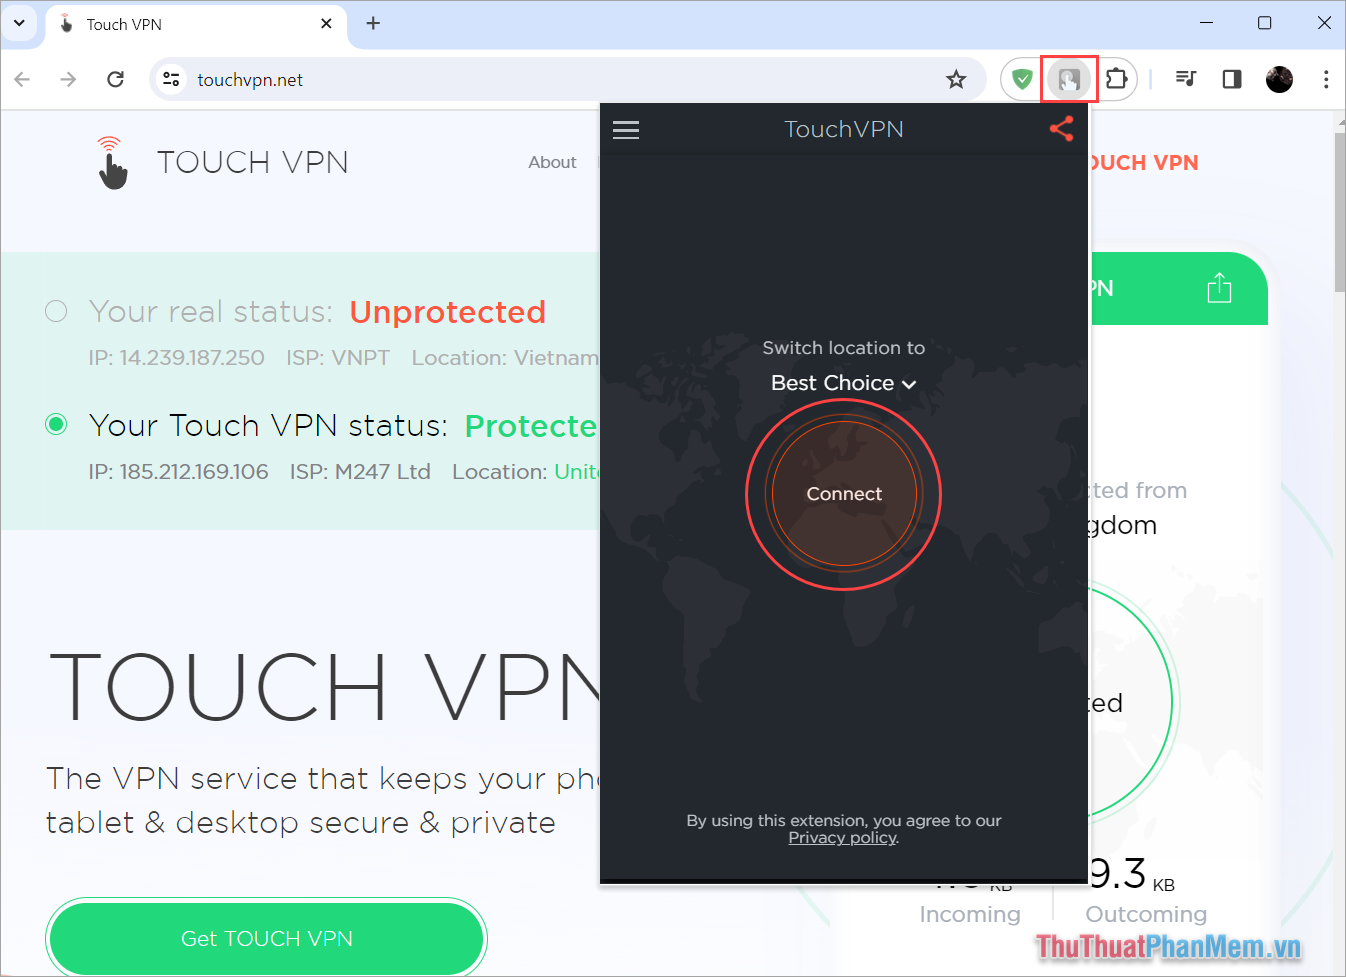 Kích hoạt VPN bằng cách nhấn Connect